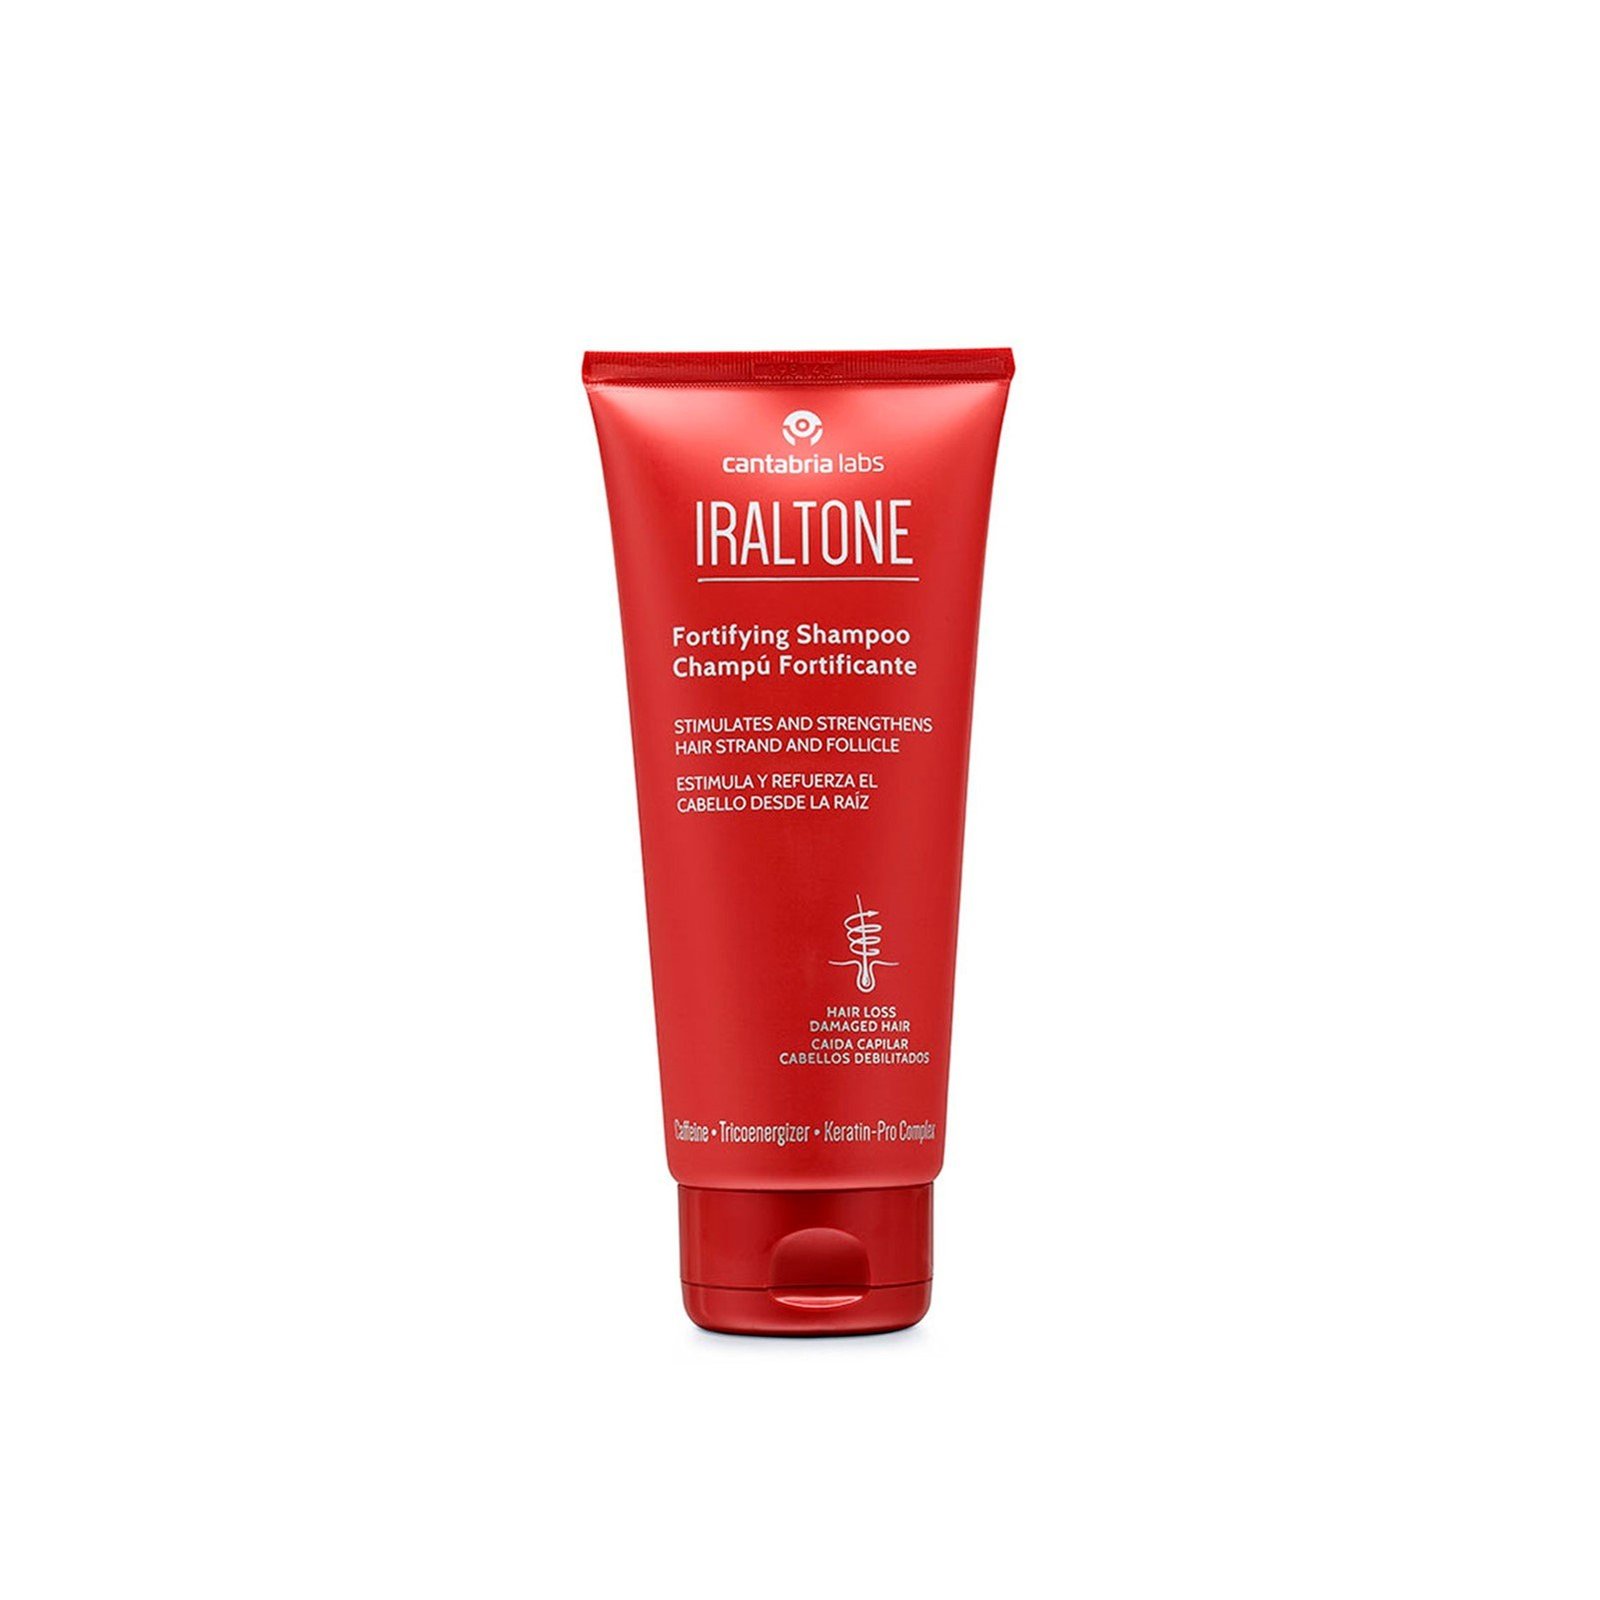 Iraltone Fortifying Shampoo 200ml (6.7 fl oz)